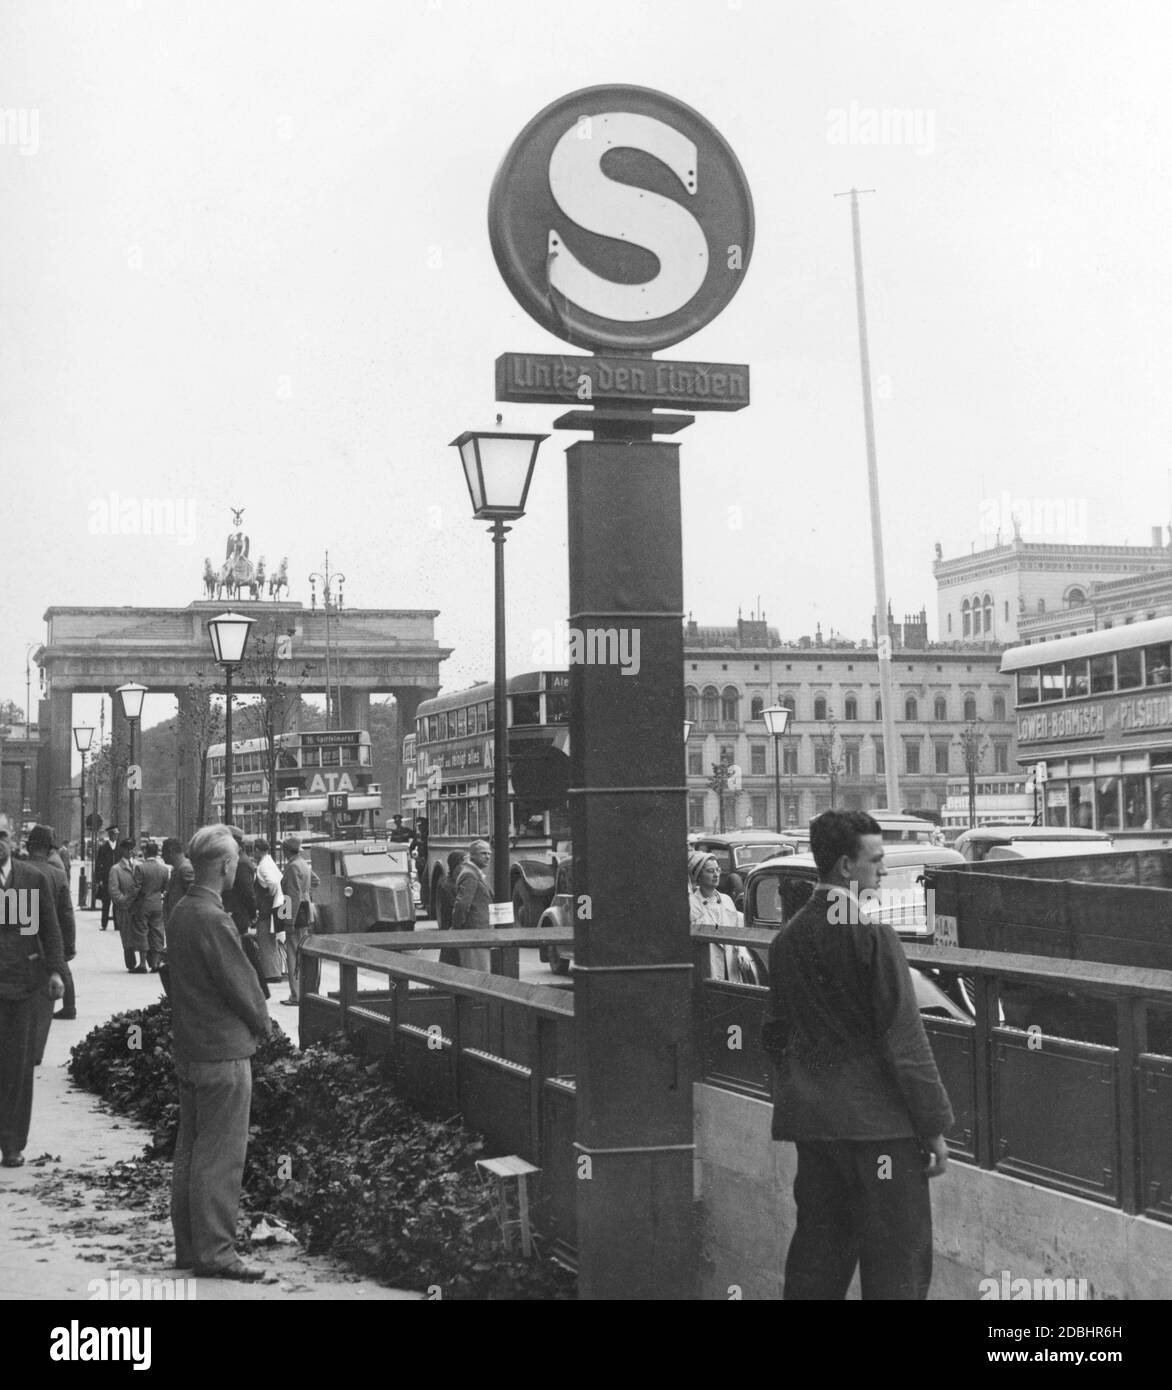 Vue sur la station de S-Bahn Unter den Linden à Berlin. En arrière-plan, la porte de Brandebourg et les bus touristiques. Photo non datée. Banque D'Images